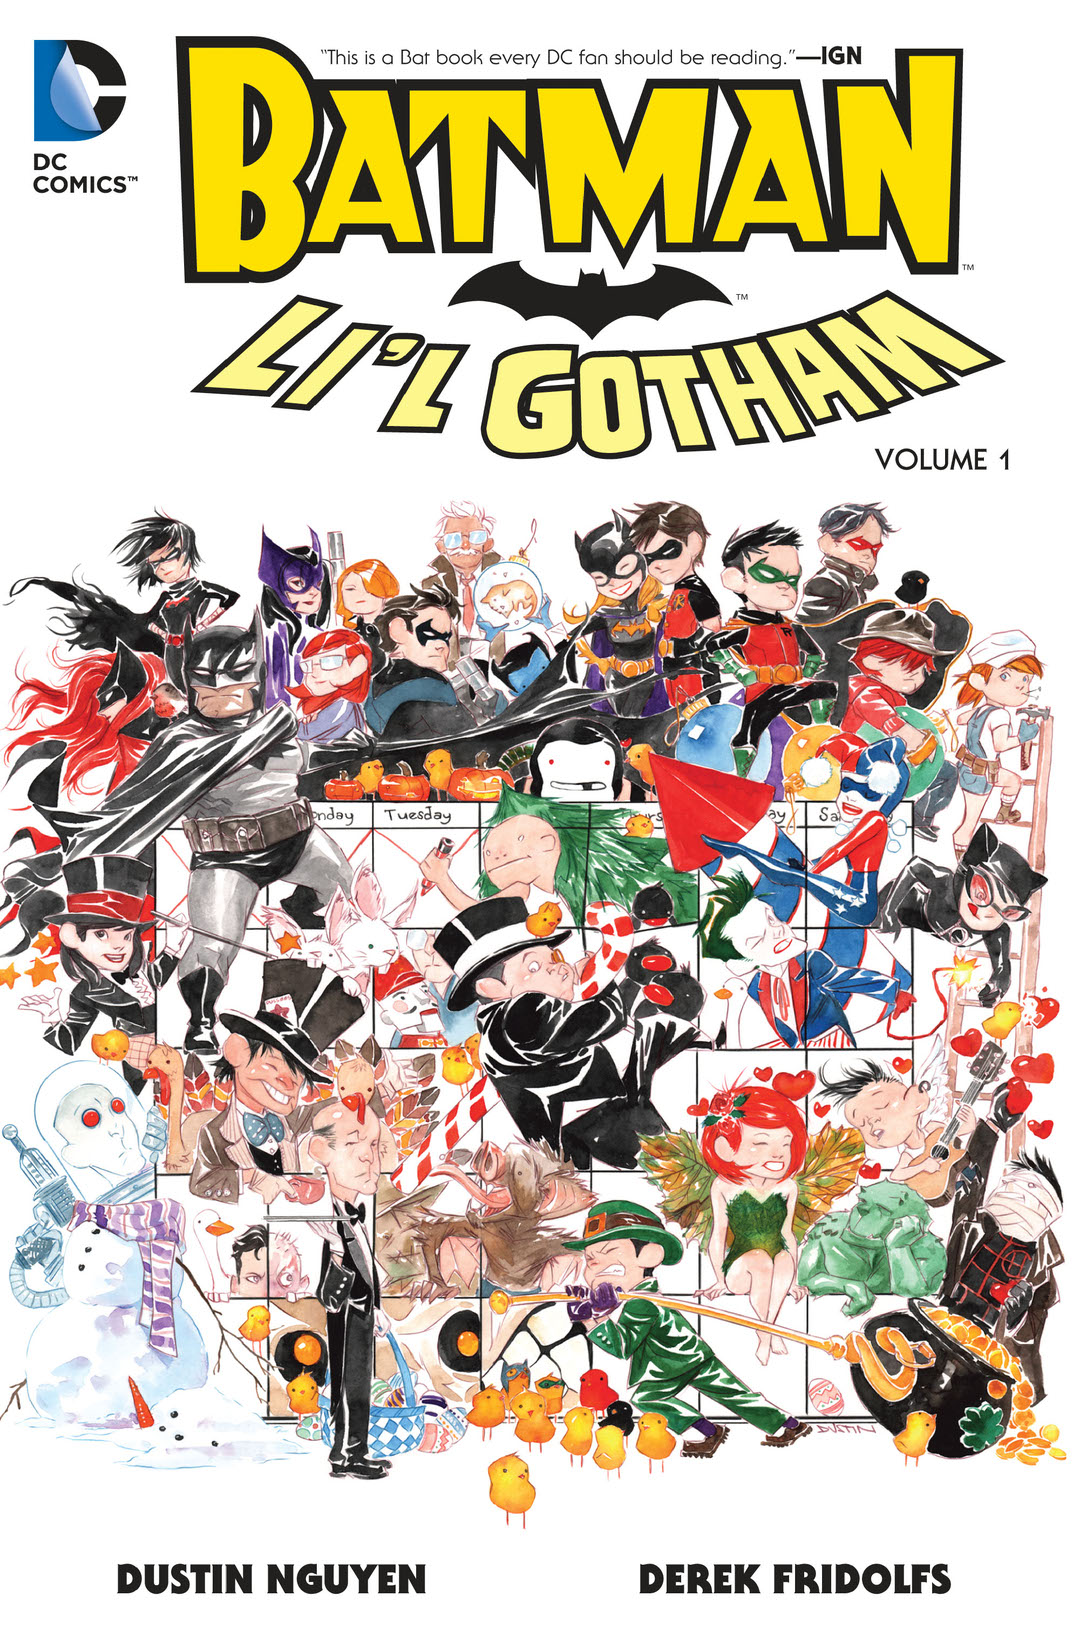 Batman: Li'l Gotham Vol. 1 preview images